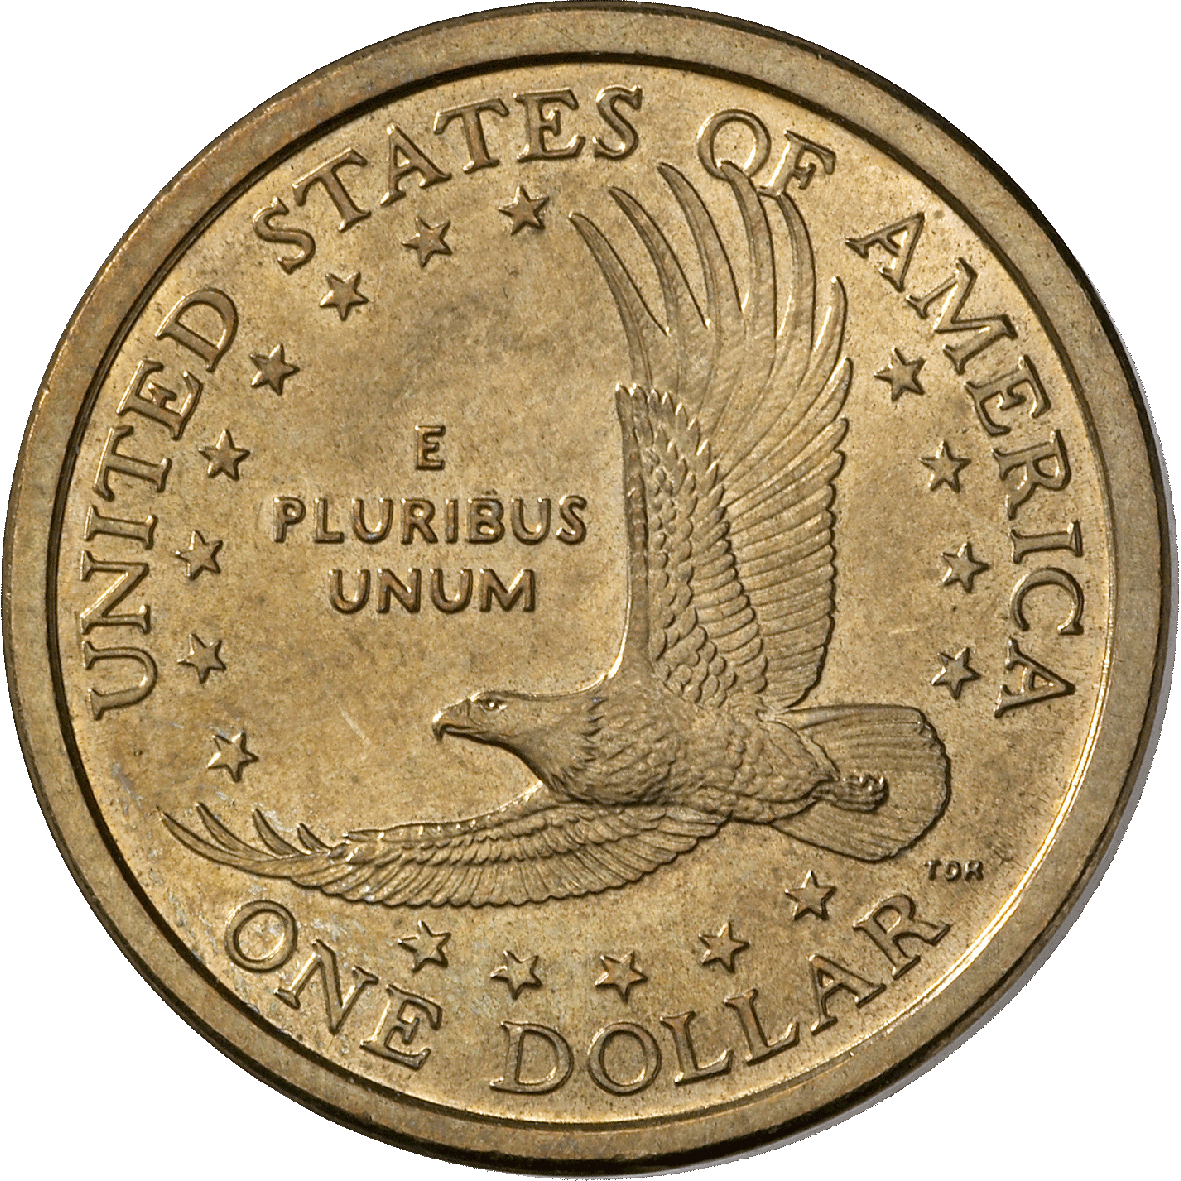 Vereinigte Staaten von Amerika, 1 Dollar 2000 (reverse)